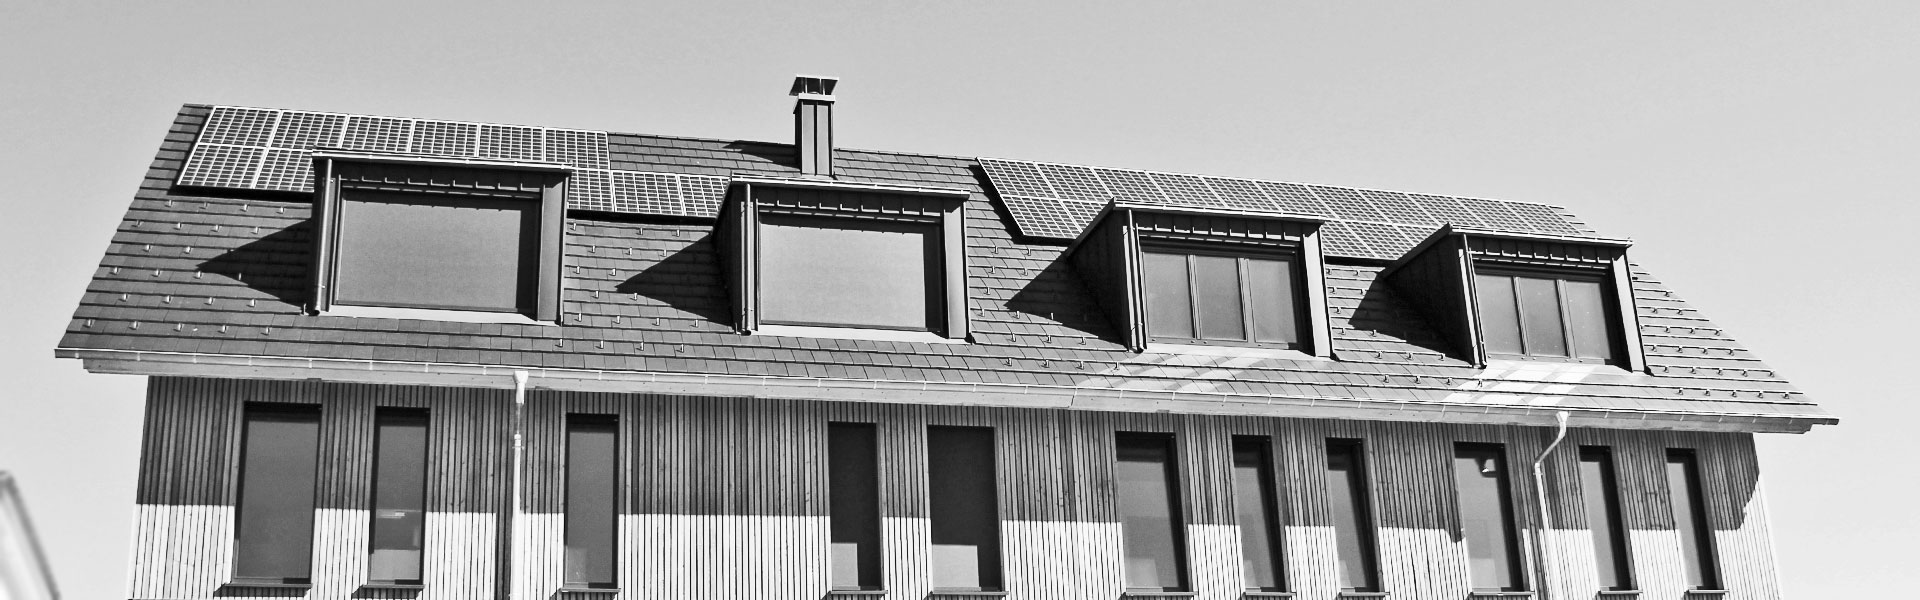 Holzhaus mit Solaranalge Steiger & Riesterer